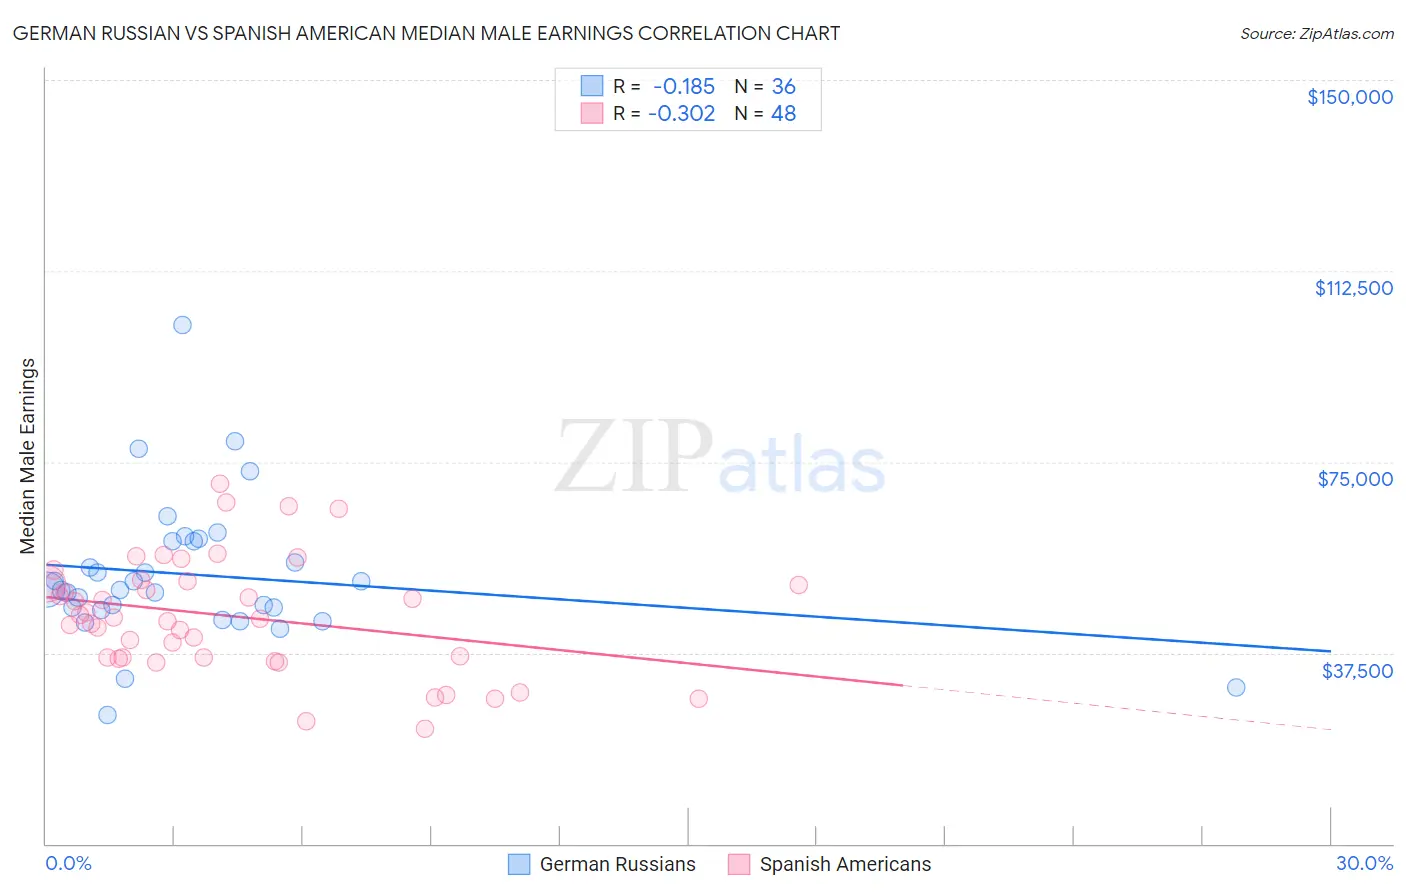 German Russian vs Spanish American Median Male Earnings